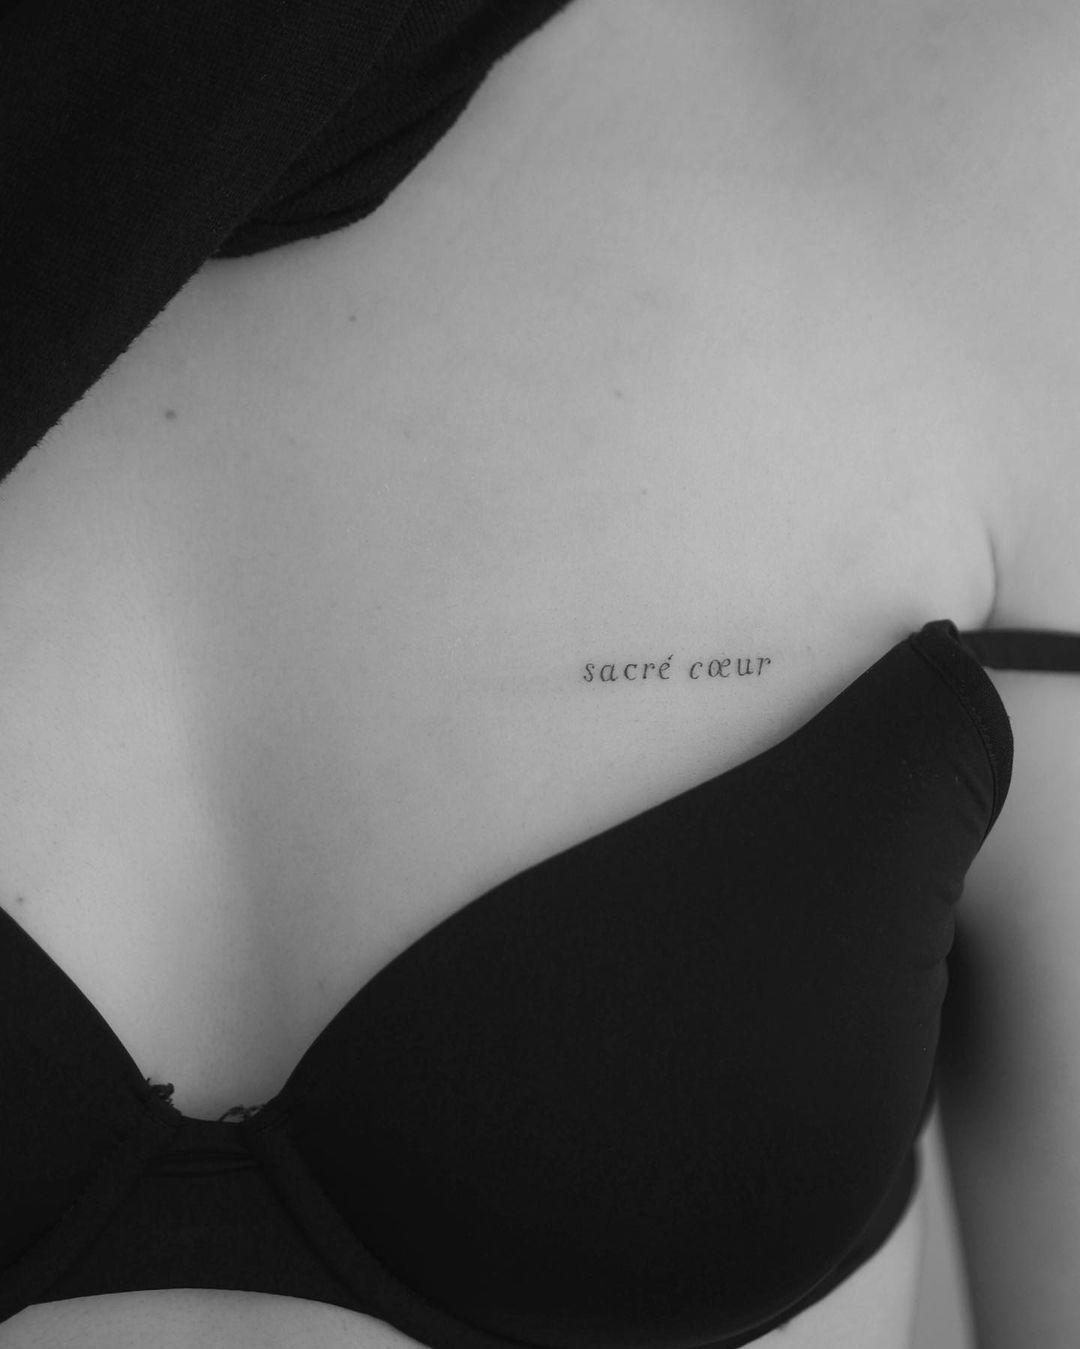 'Sacré coeur' tatuado con letra serif sobre el pecho